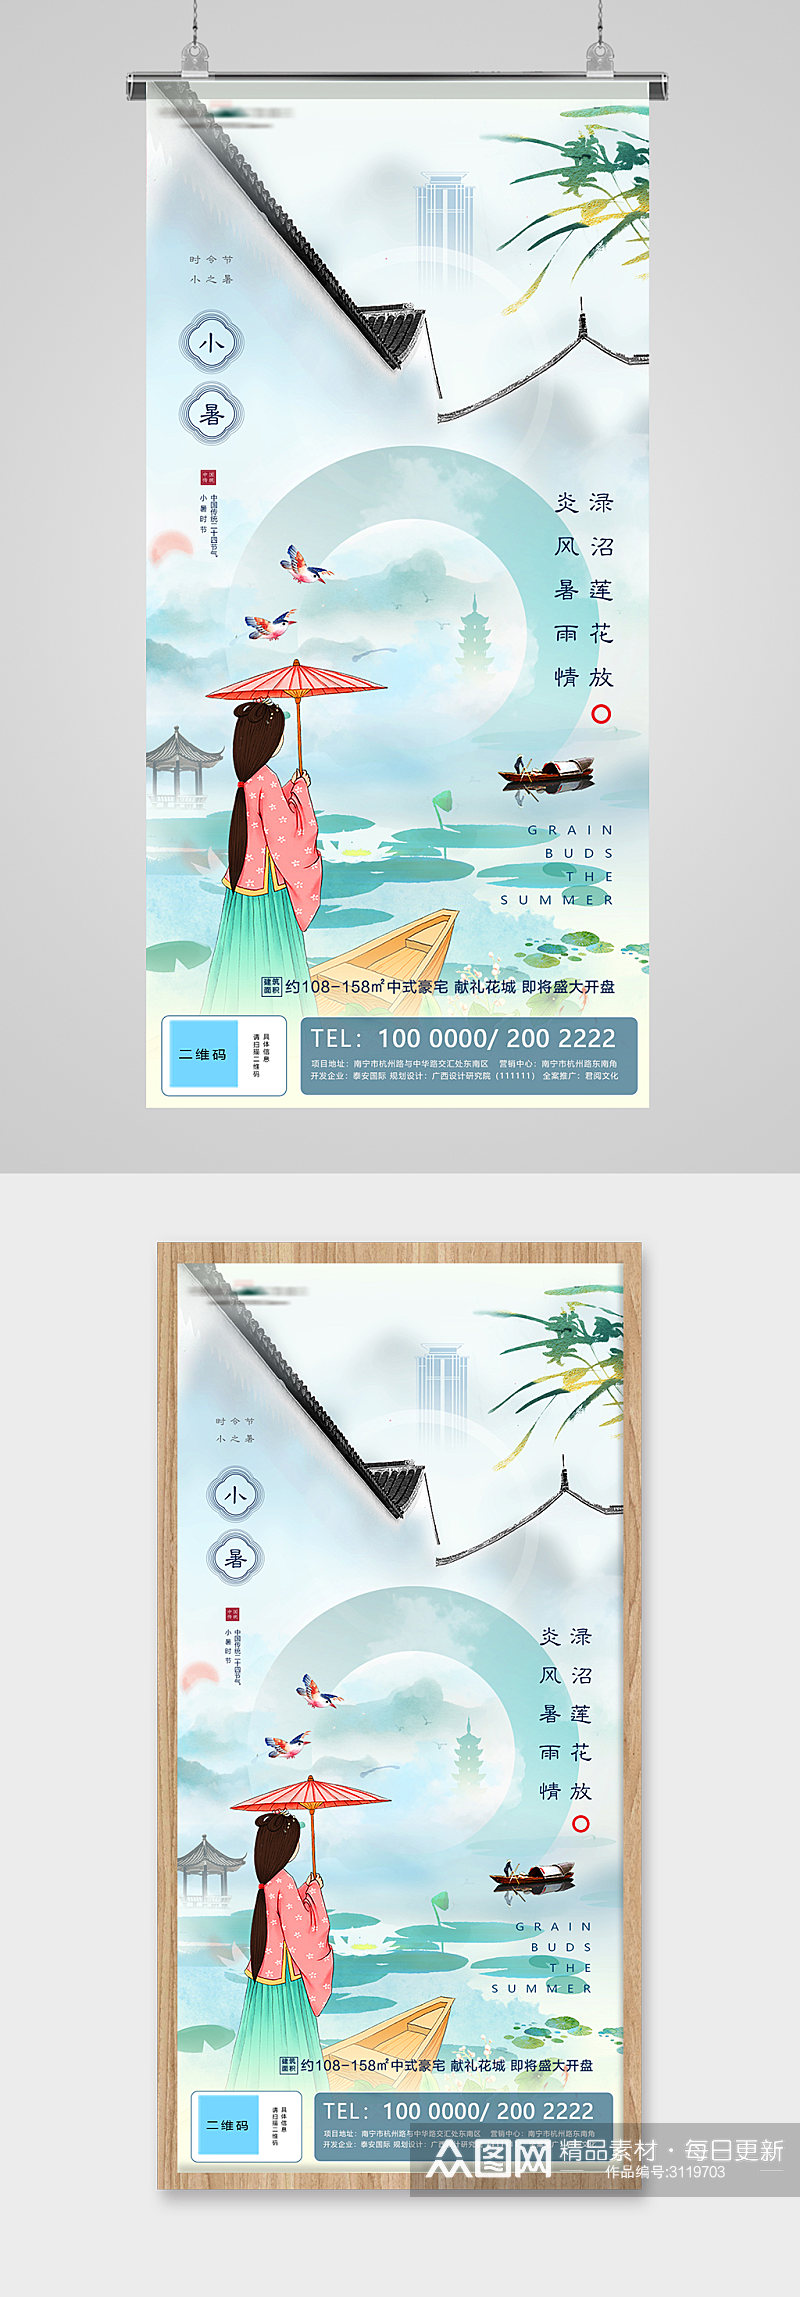 小暑节气中国风插画庭院地产海报素材